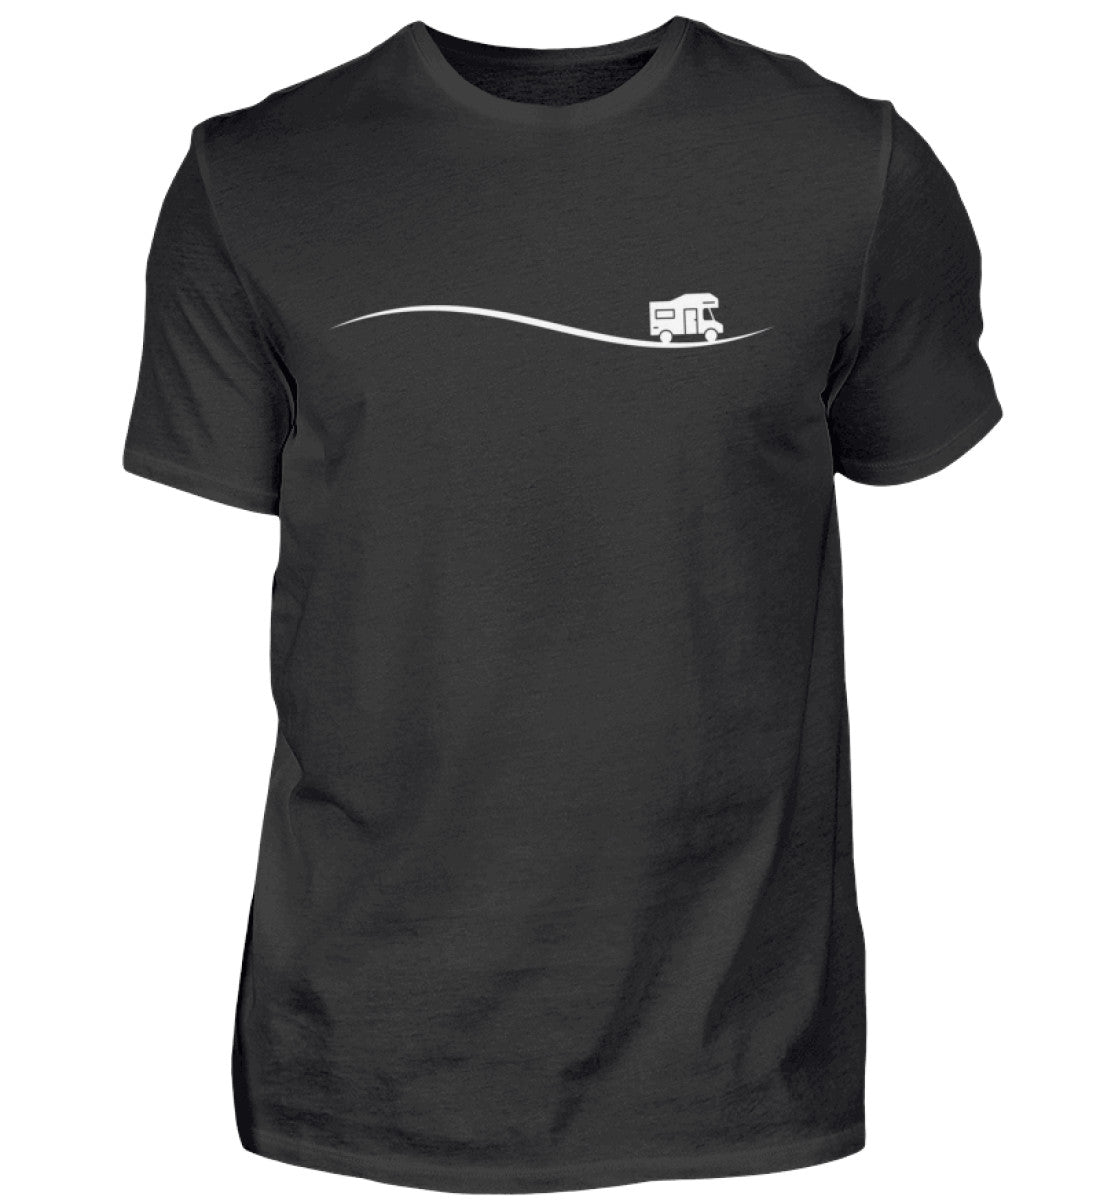 UNTERWEGS - Herren Shirt in der Farbe Black